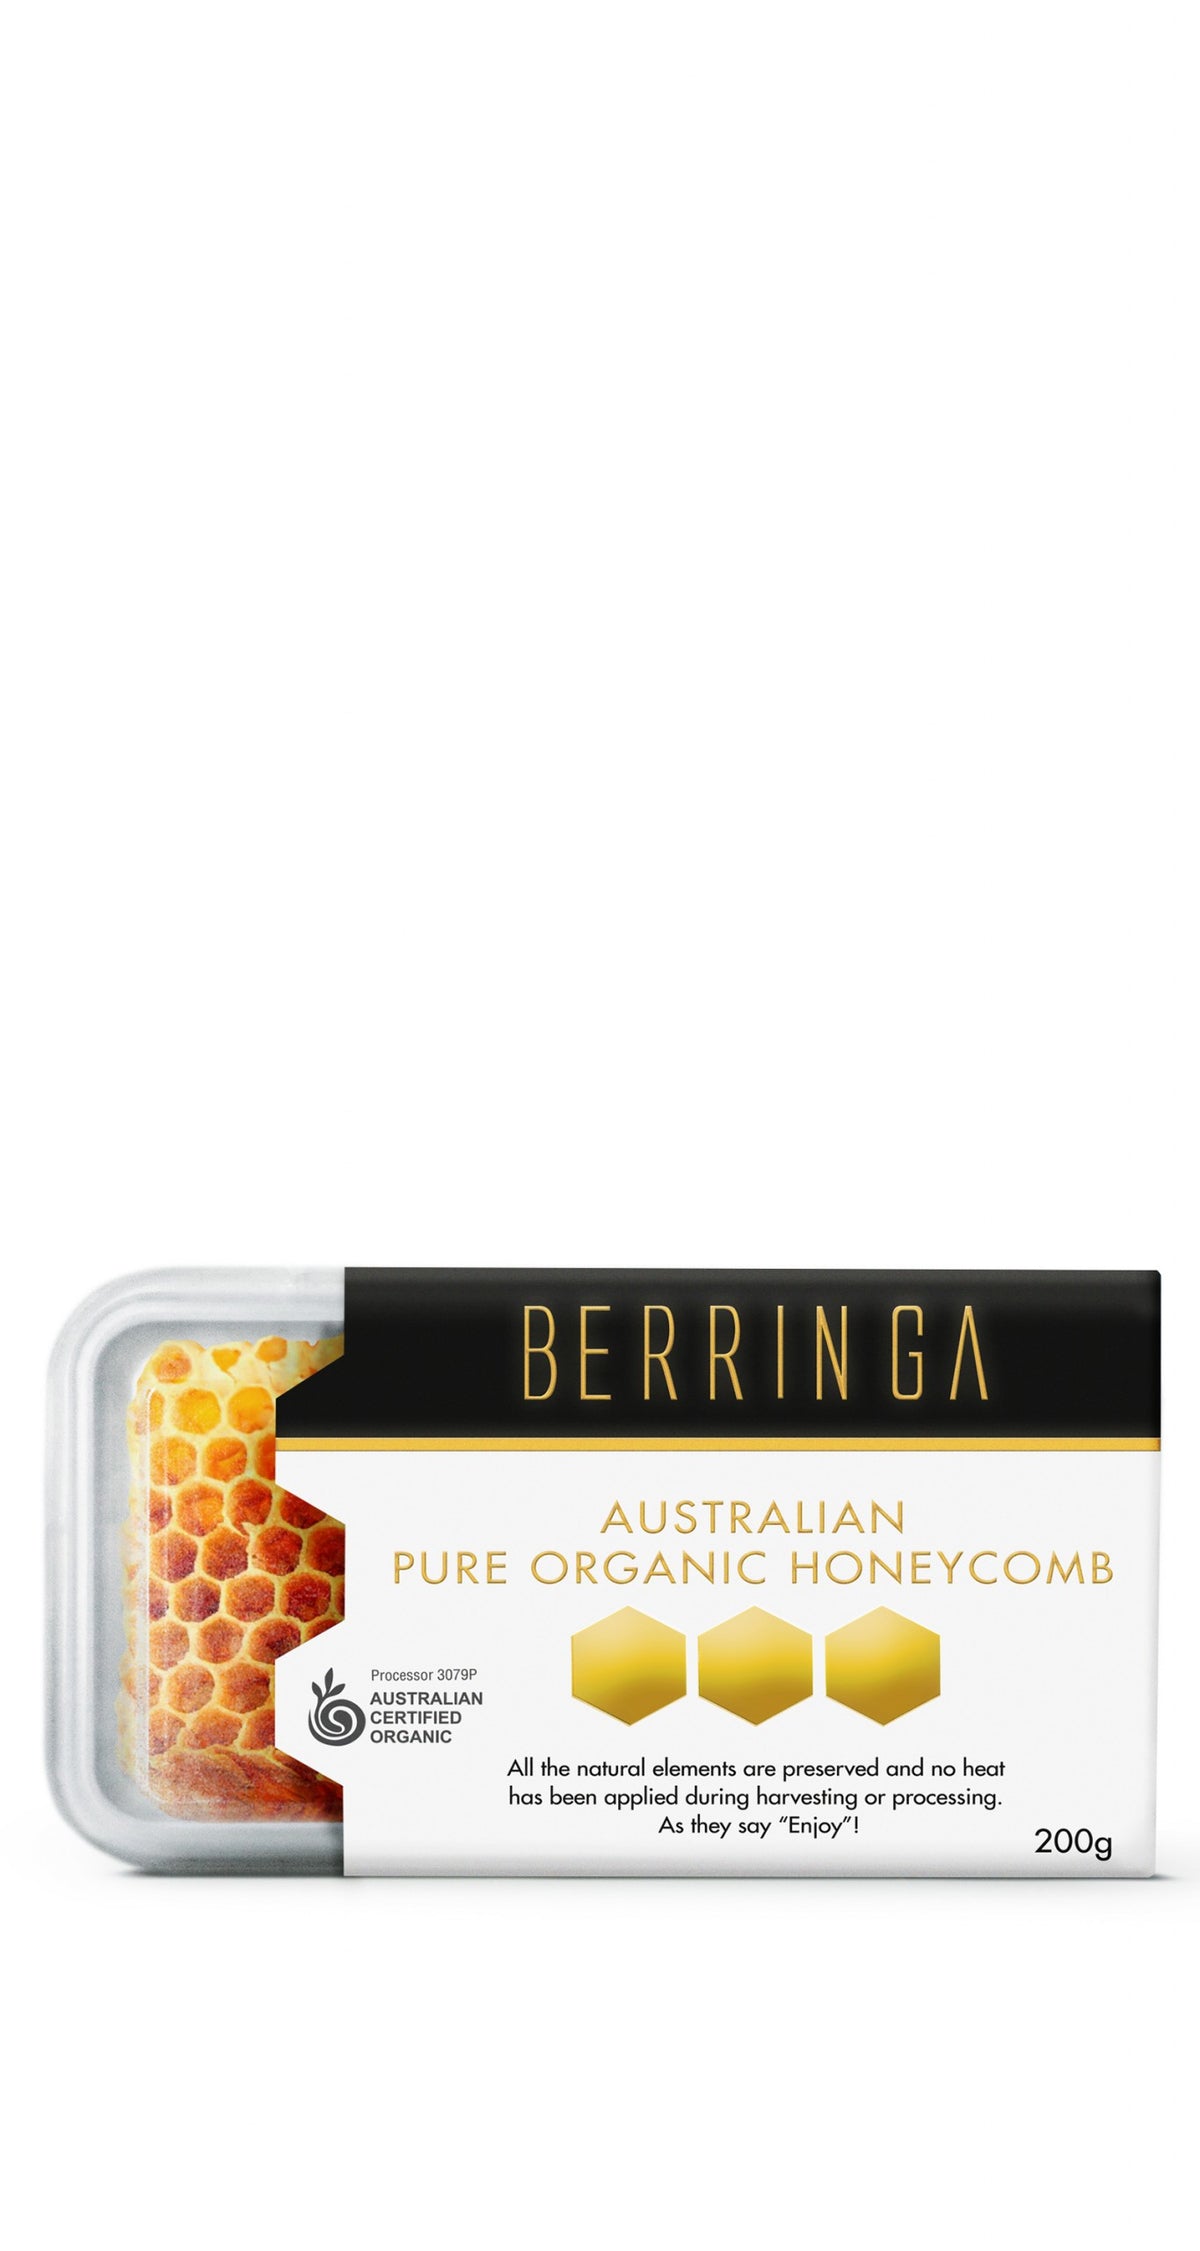 Berringa Certified Organic Honeycomb